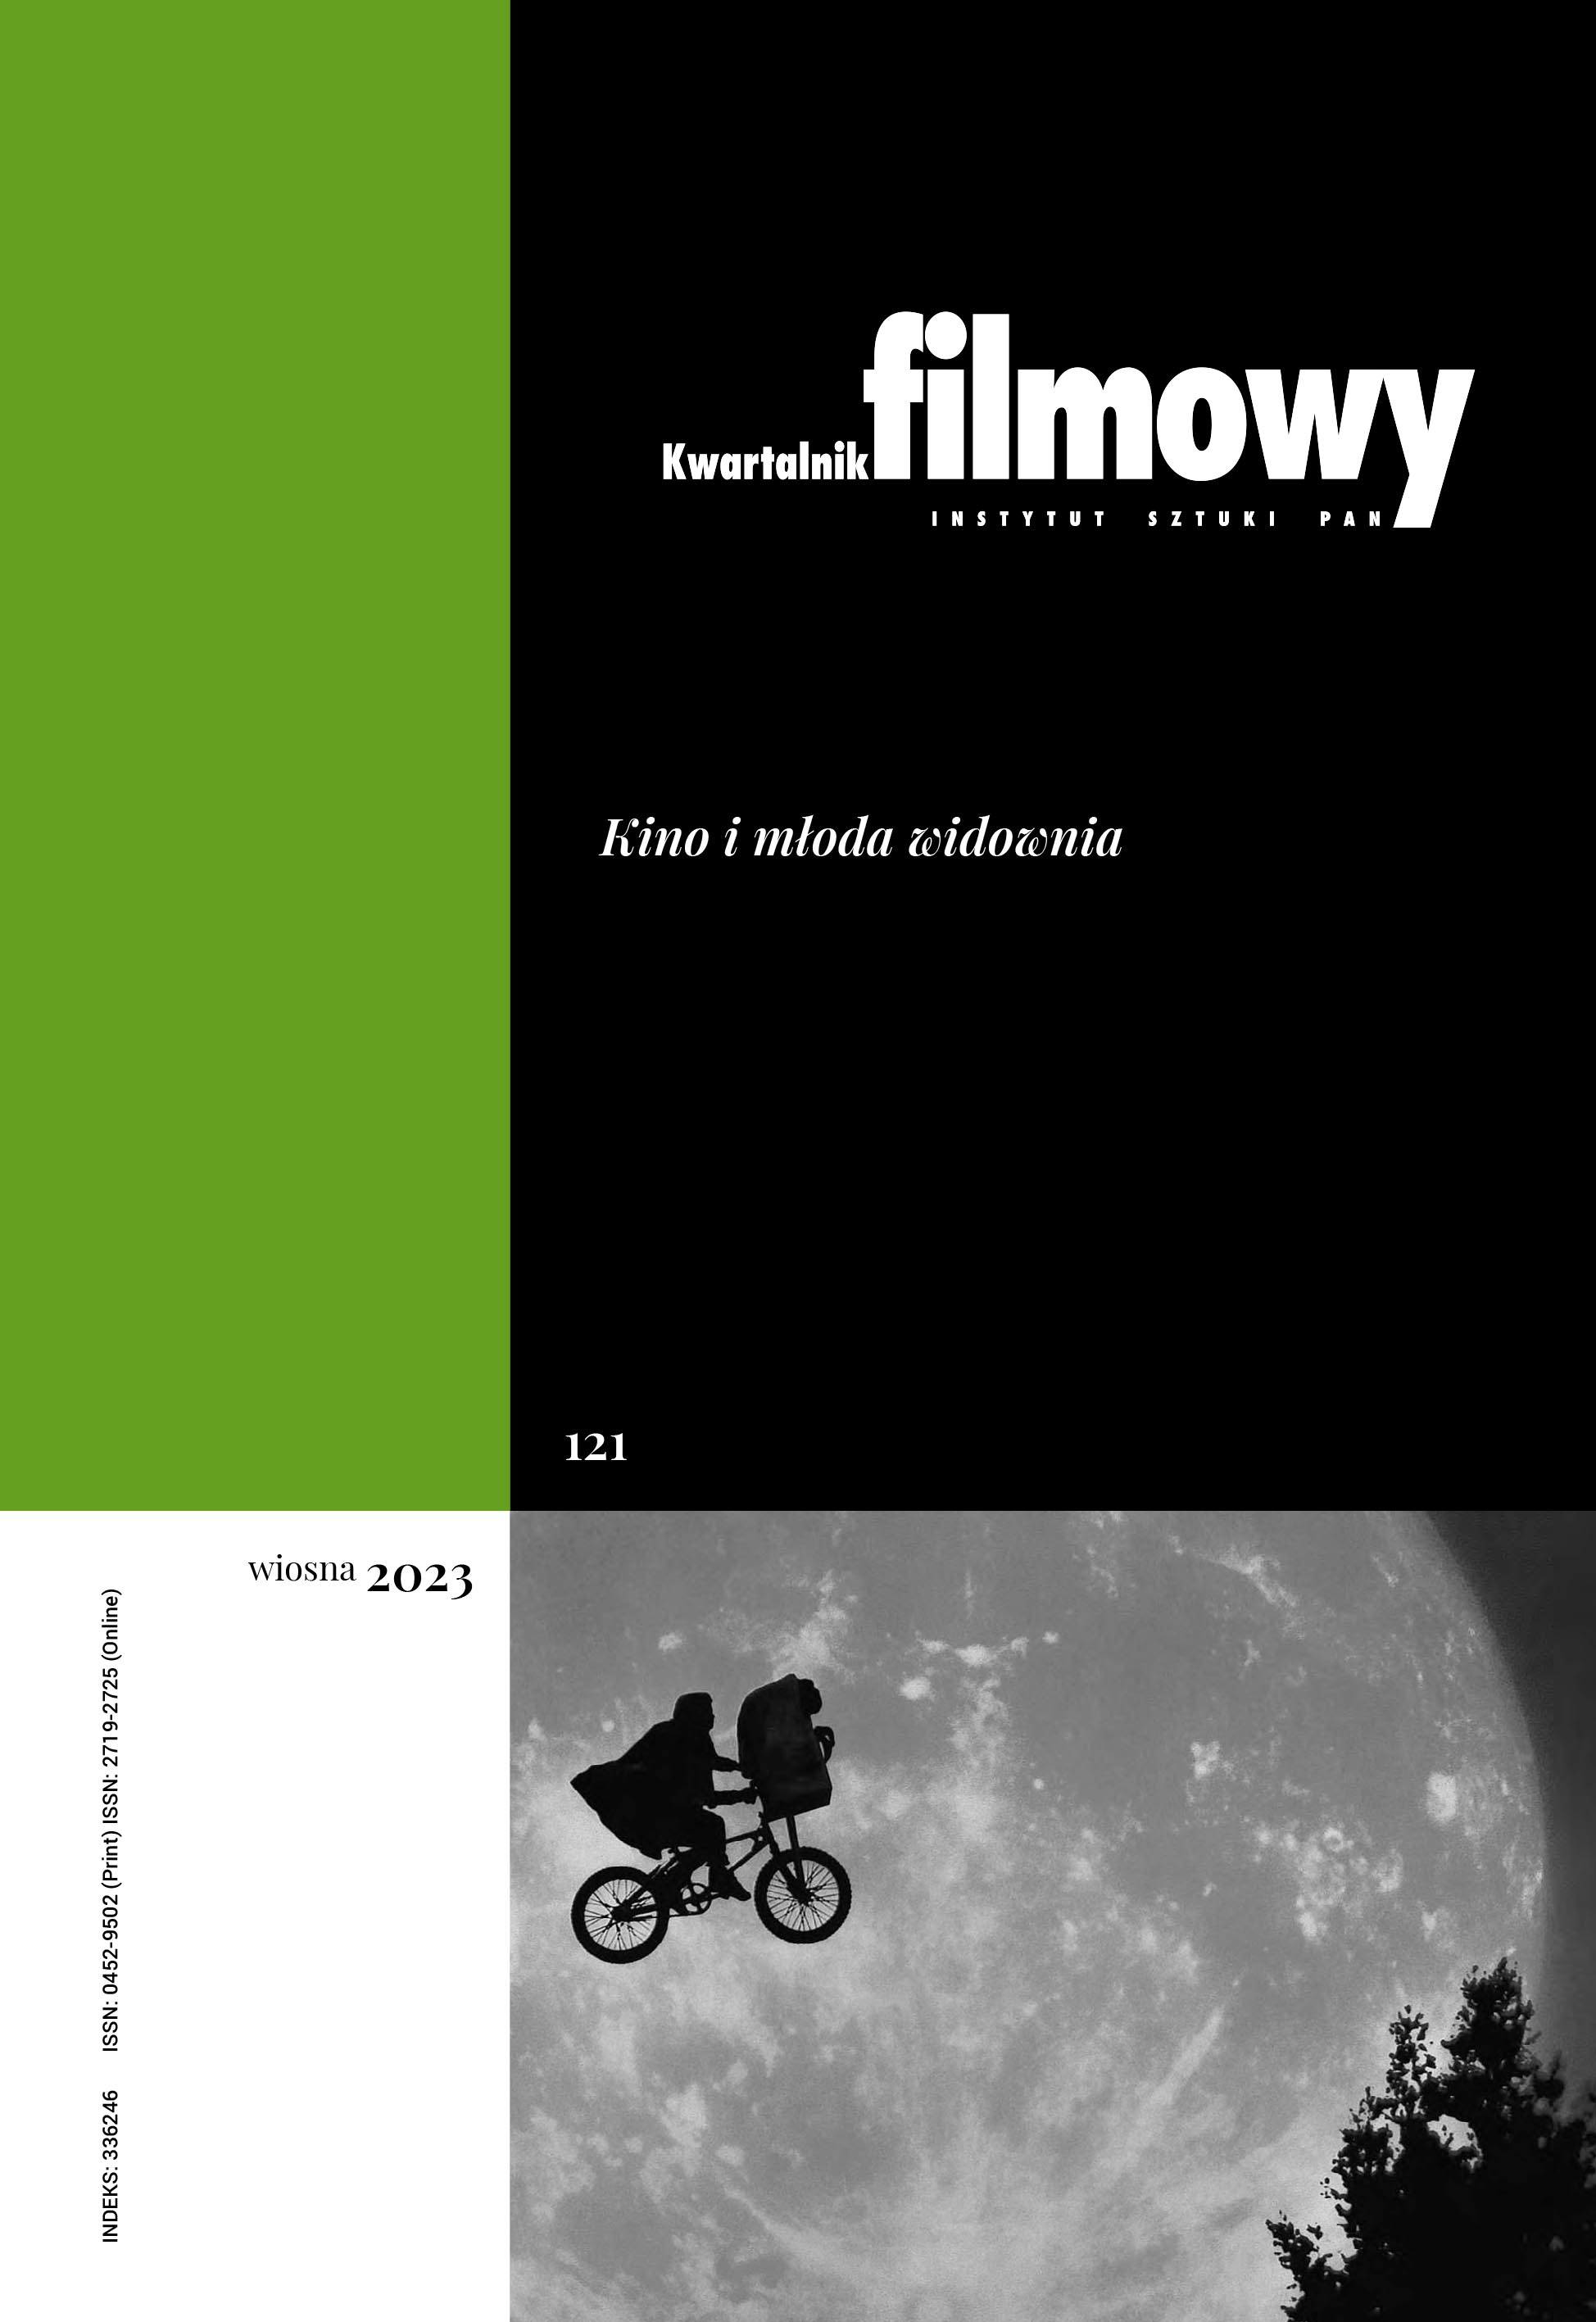 Wiesław Myśliwski’s Ideal Cinema Cover Image